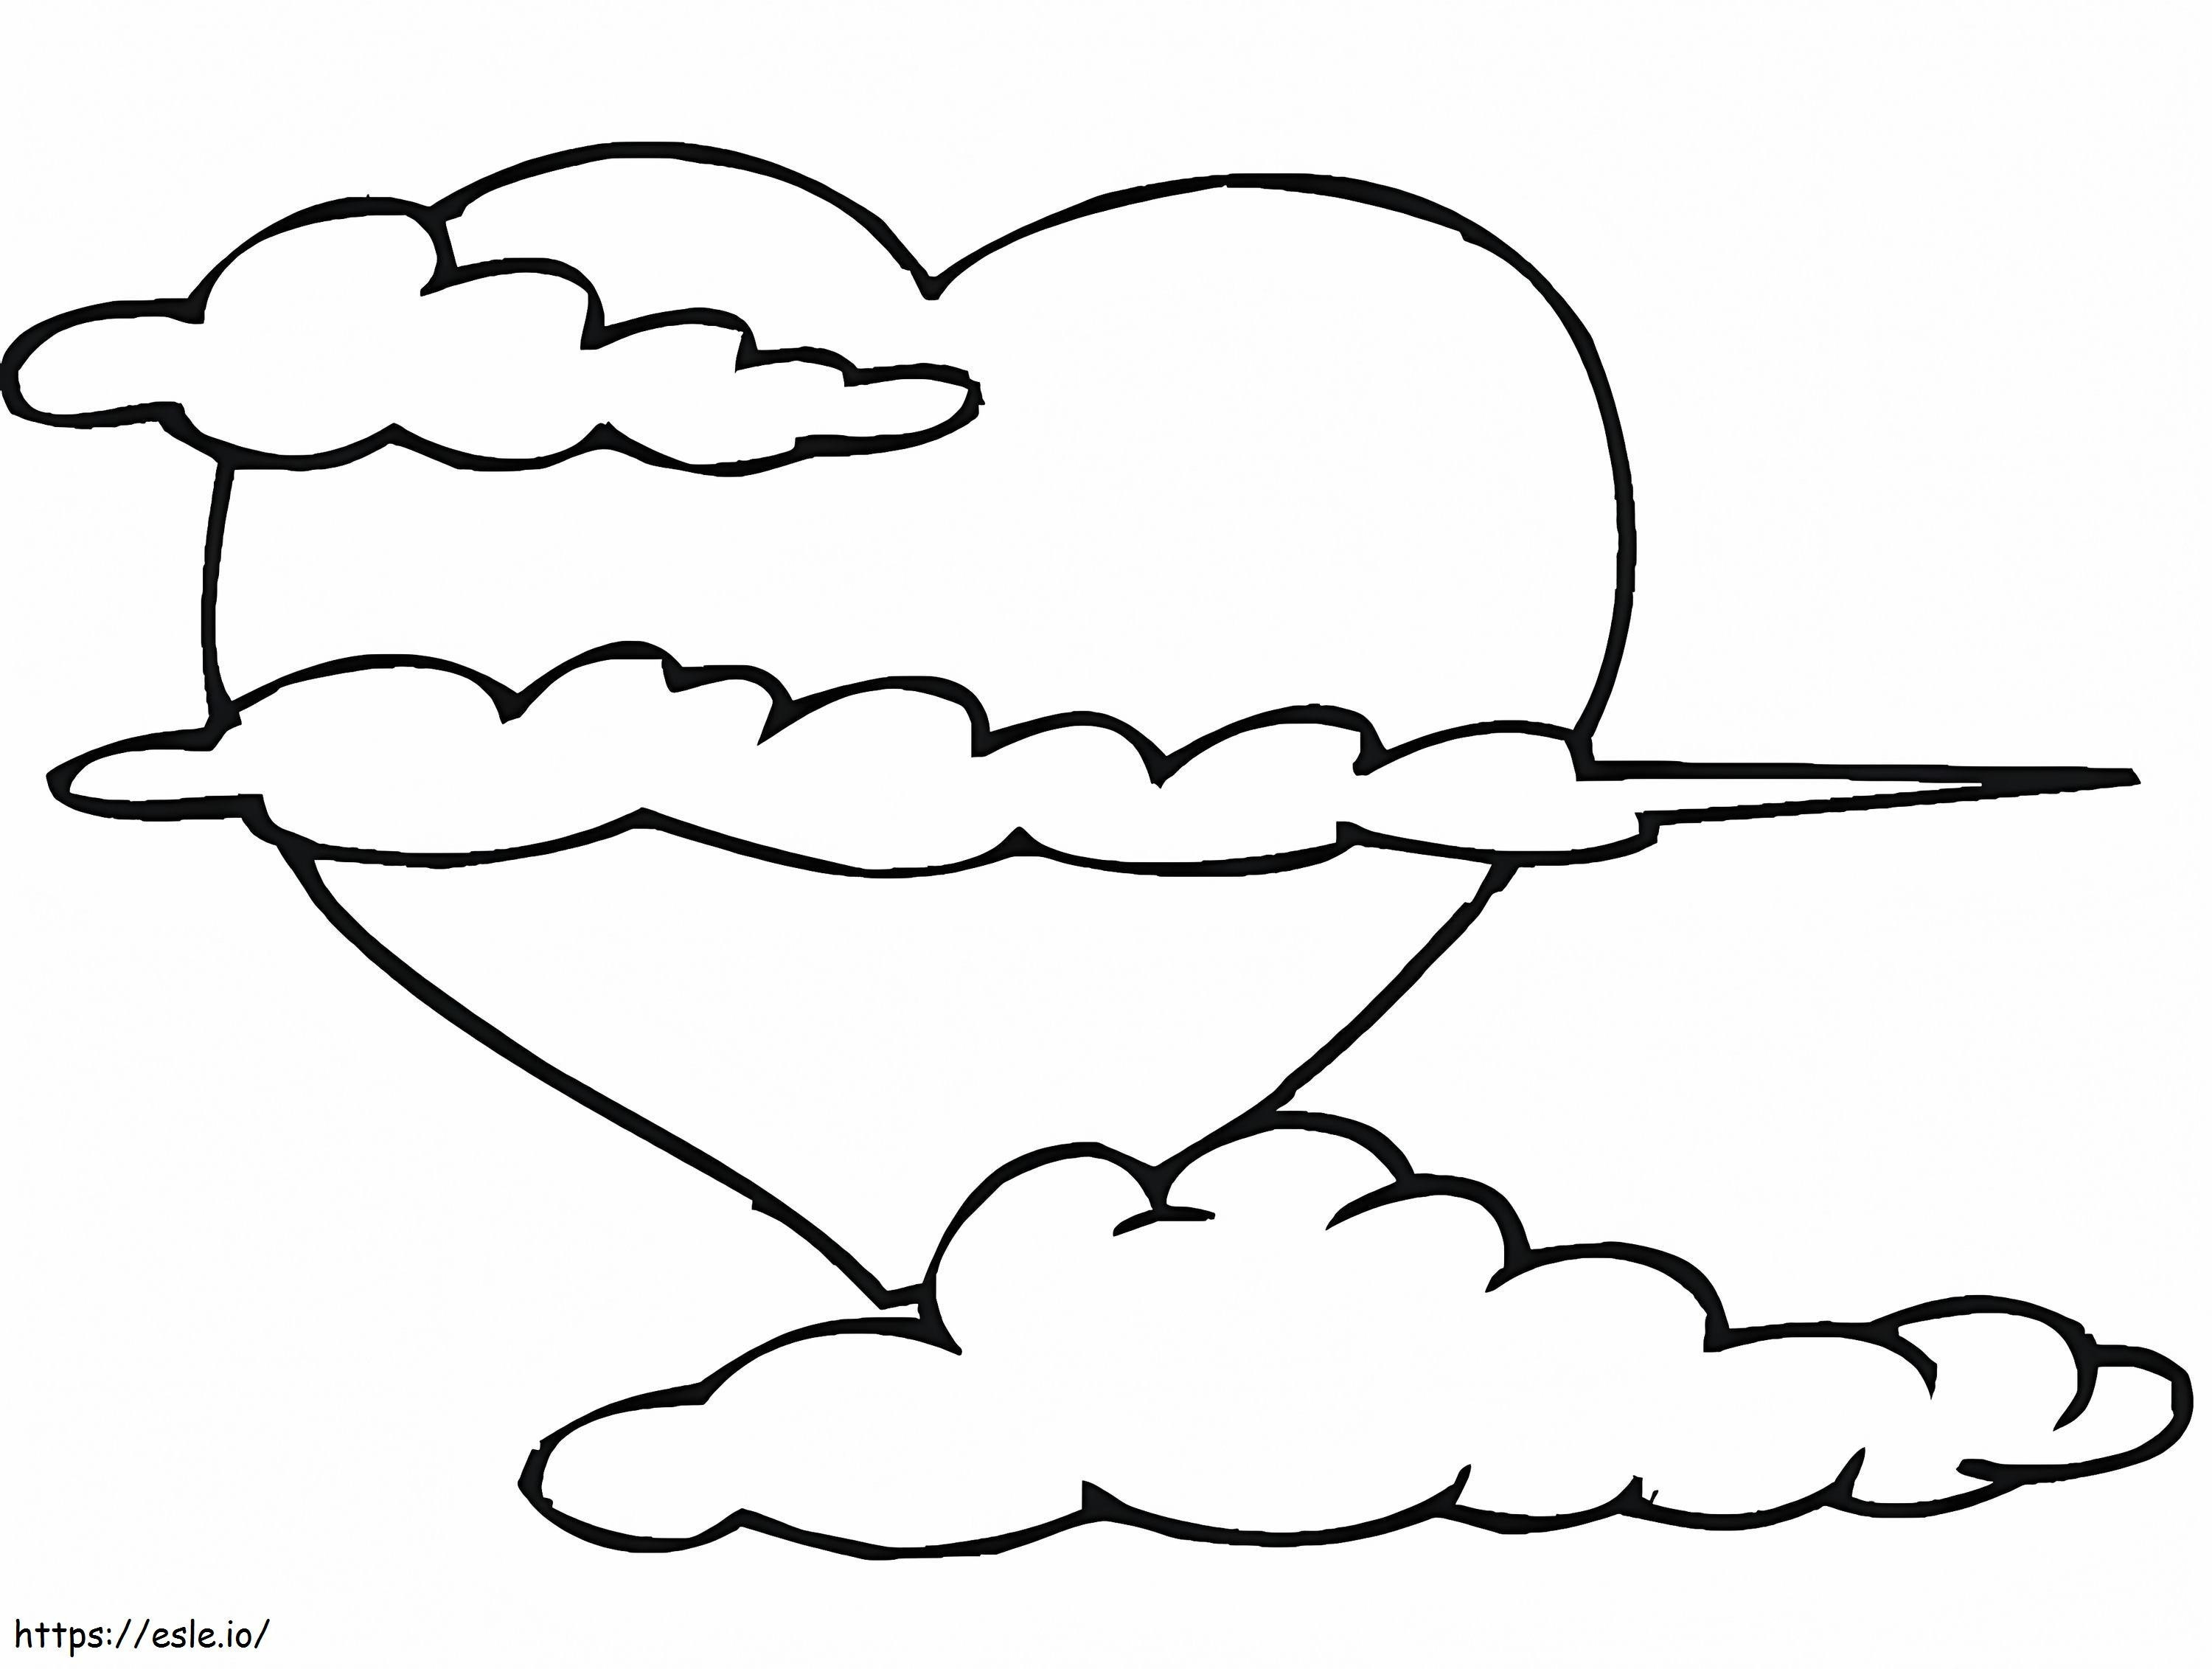 Herz und Wolken ausmalbilder